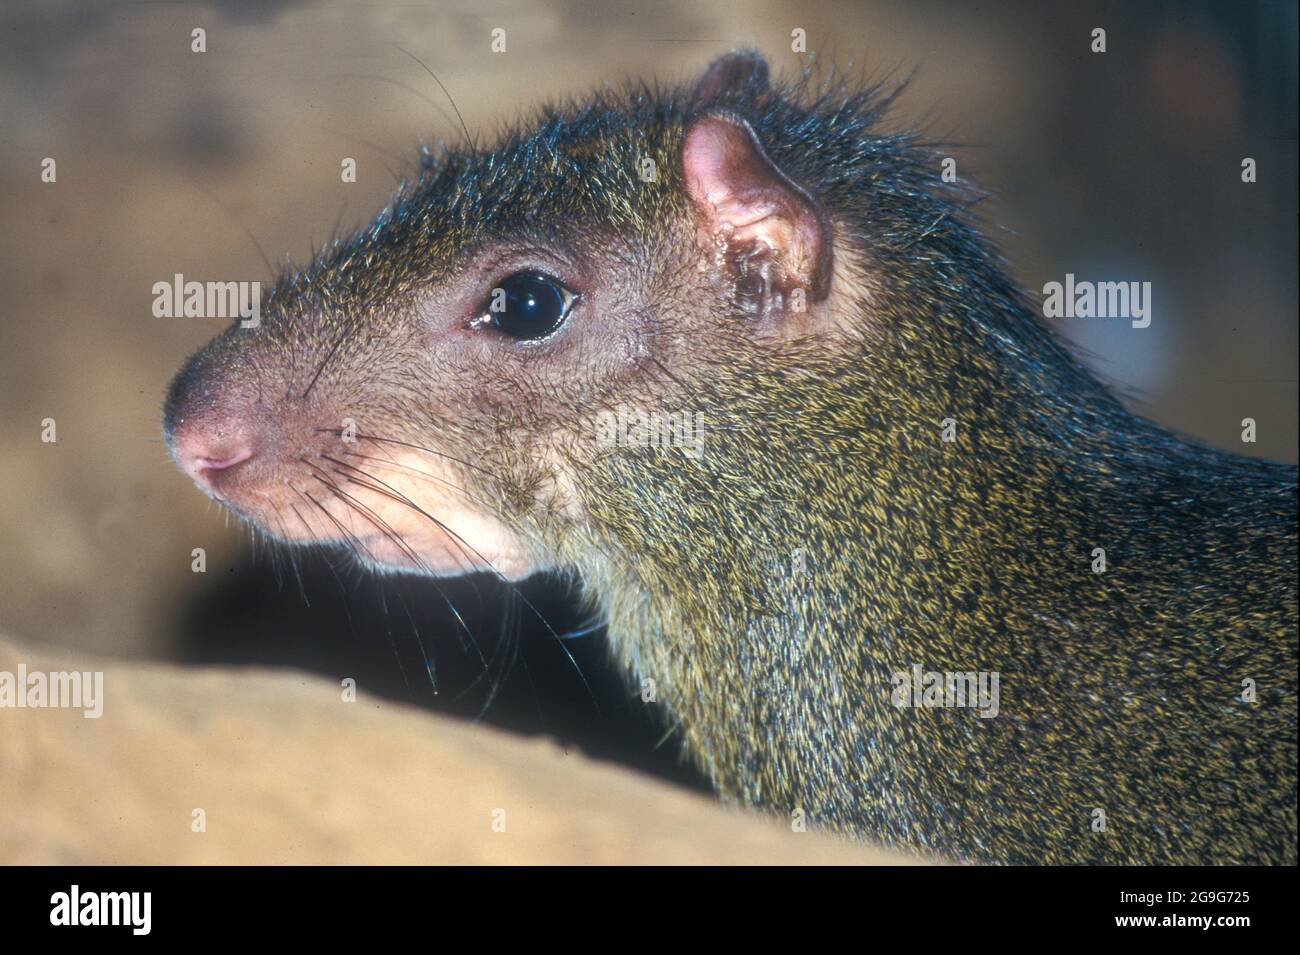 El agouti o agouti común es una de las varias especies de roedores del género Dasyprocta. Son nativos de América Central, norte y centro del sur de la mañana Foto de stock